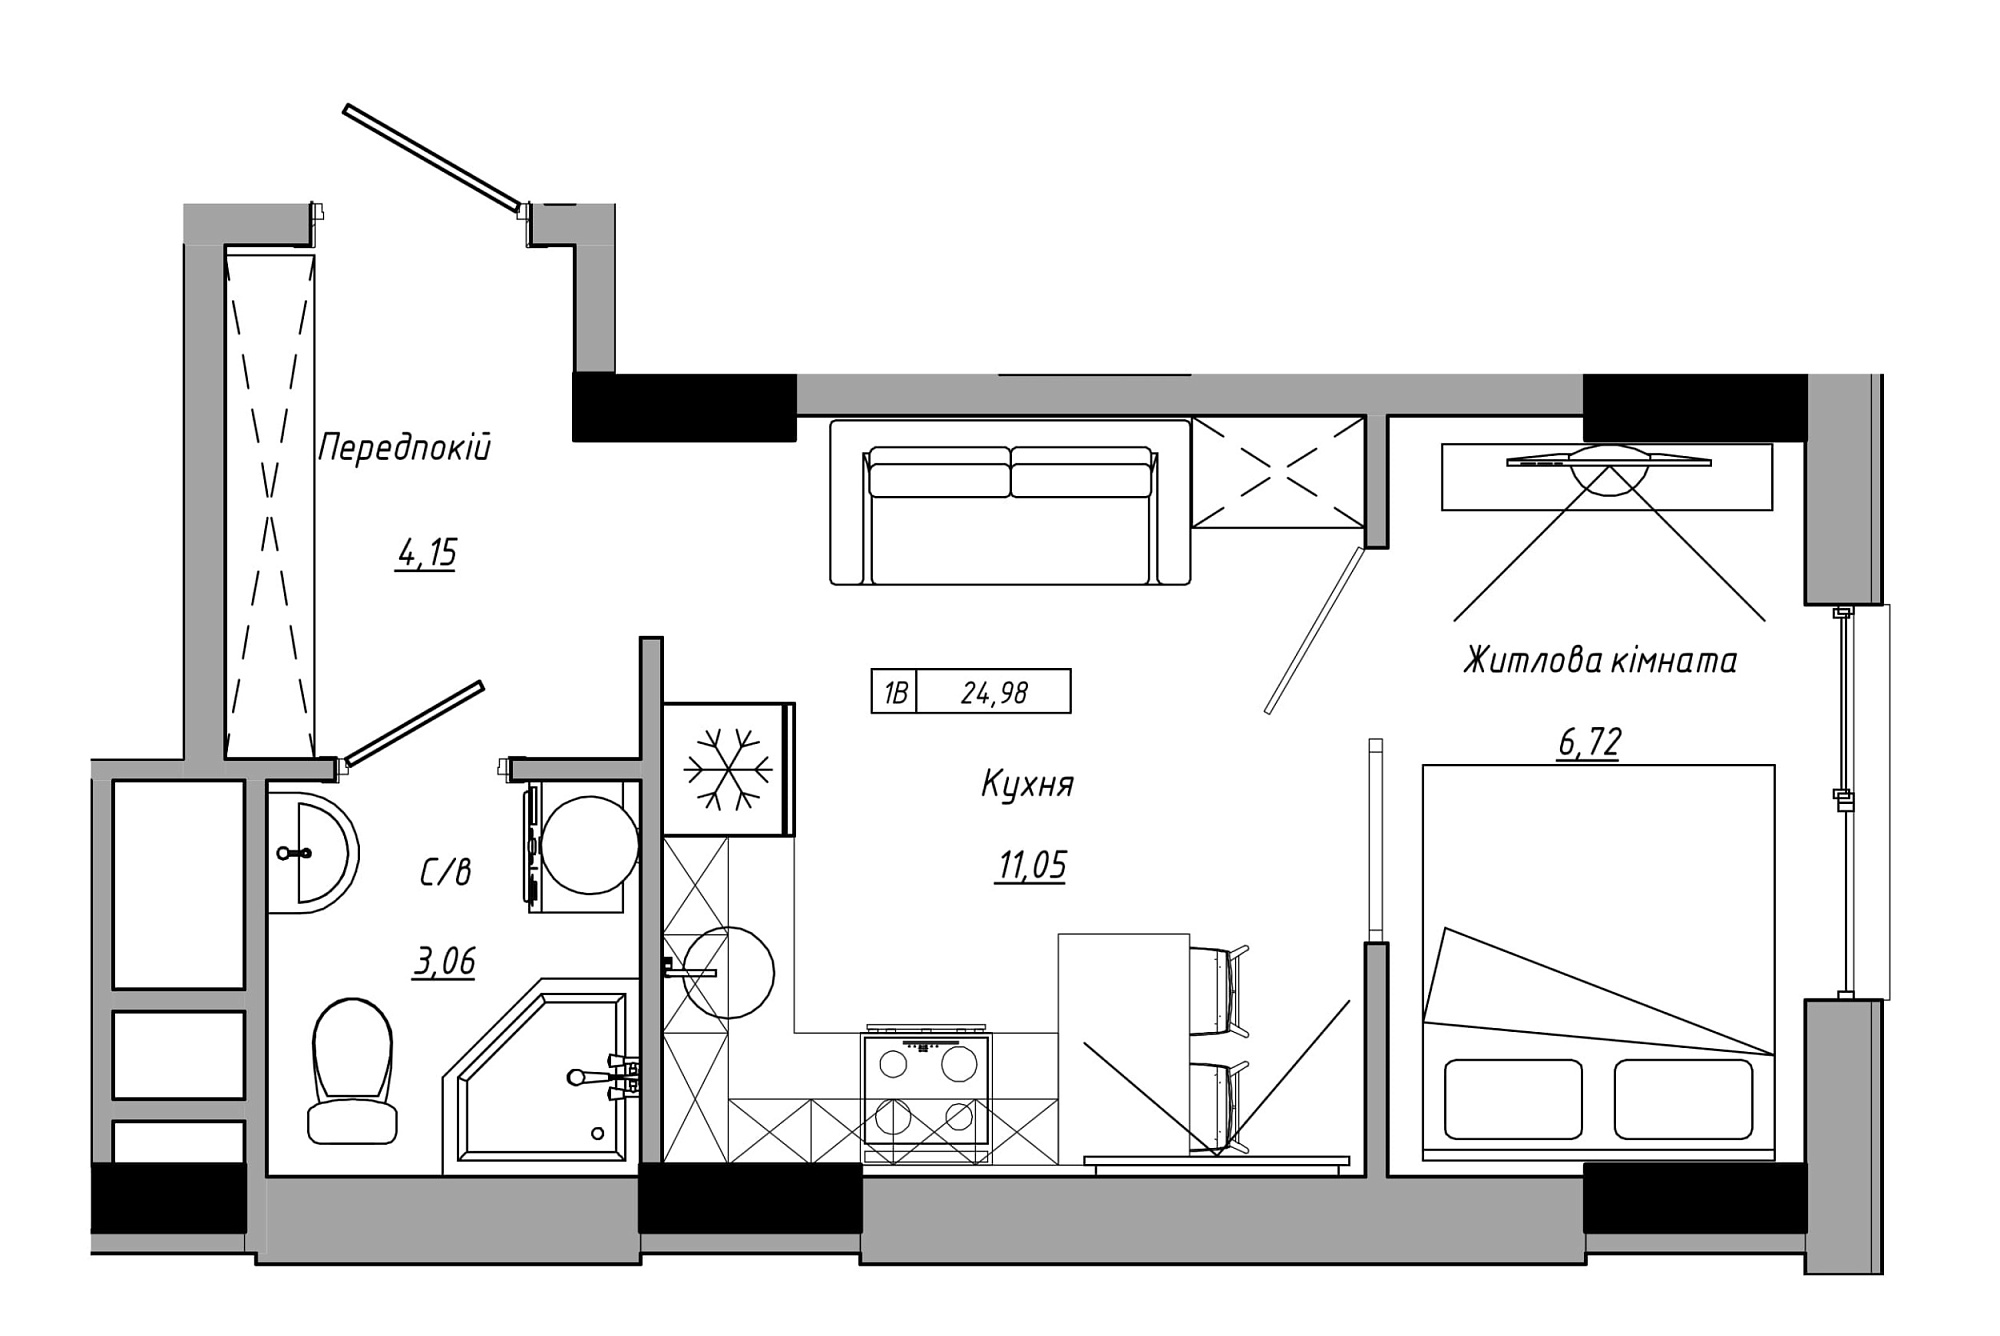 Планування 1-к квартира площею 24.98м2, AB-21-06/00004.